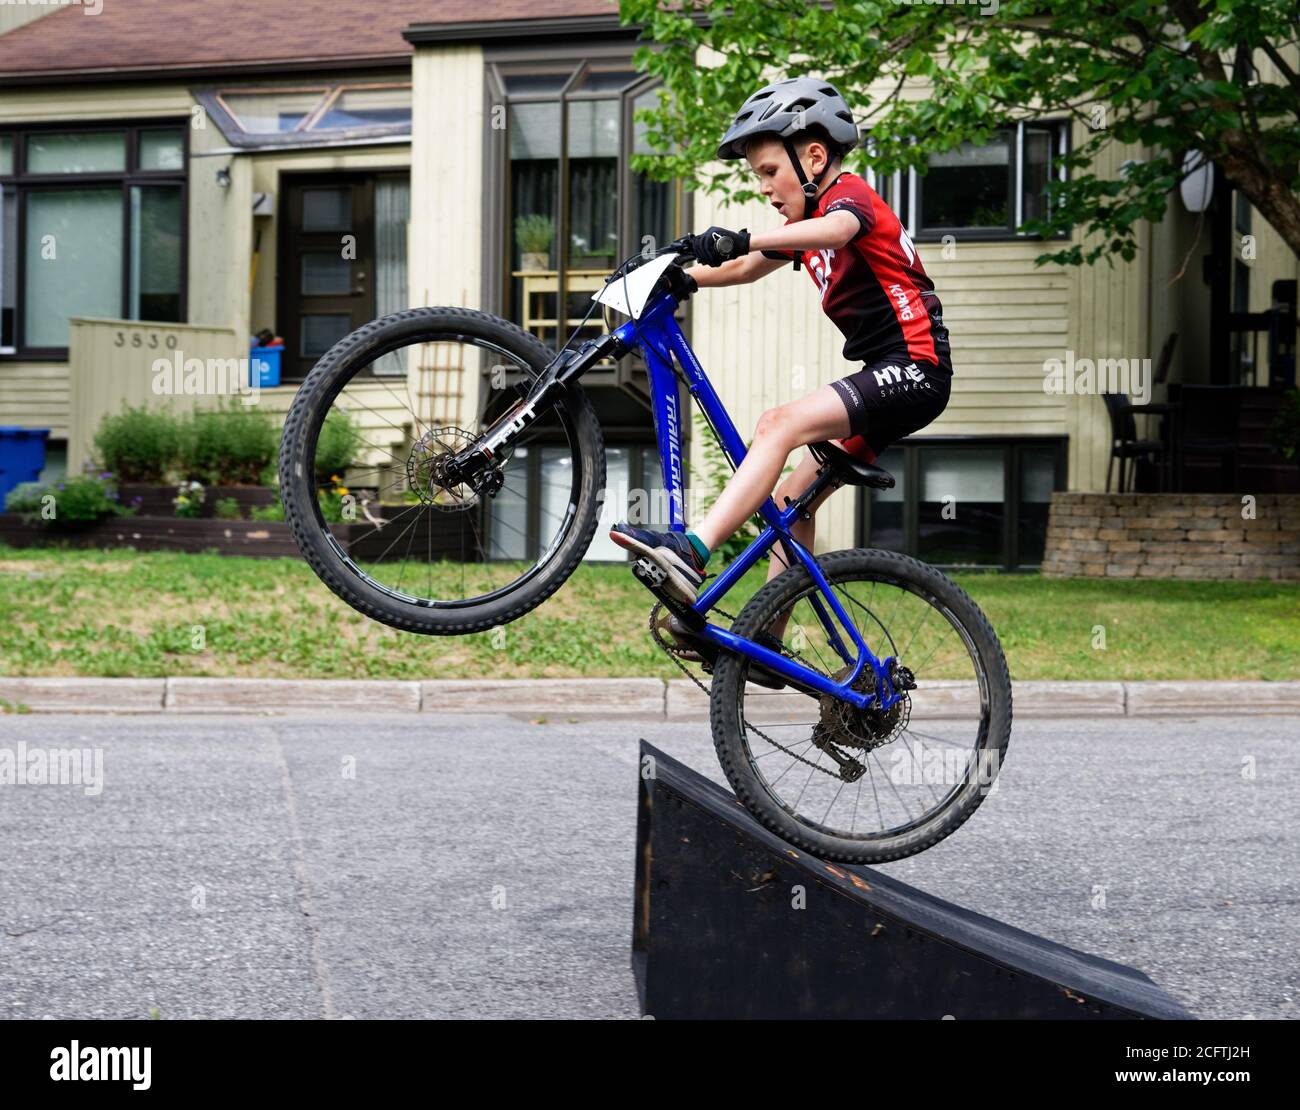 Un jeune garçon (8 ans) faire un grand saut sur son vélo de montagne Banque D'Images